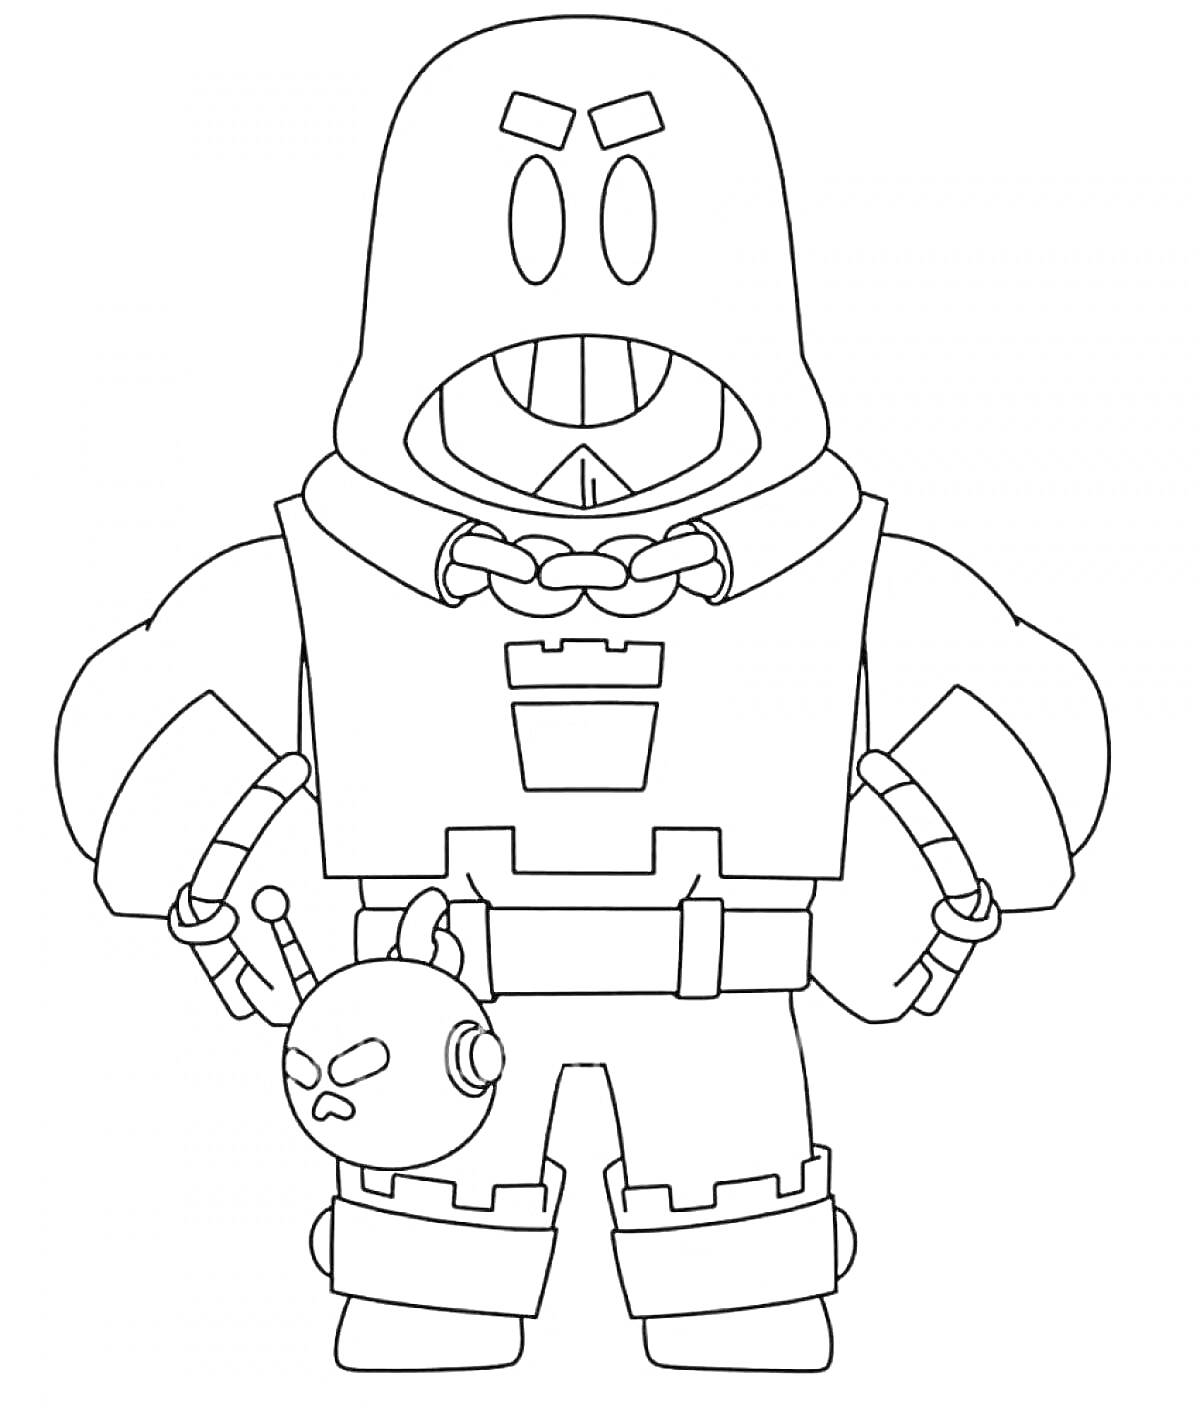 Раскраска Персонаж в капюшоне с цепью, улыбка с зубами, браслеты на руках, ремень, бомба на поясе